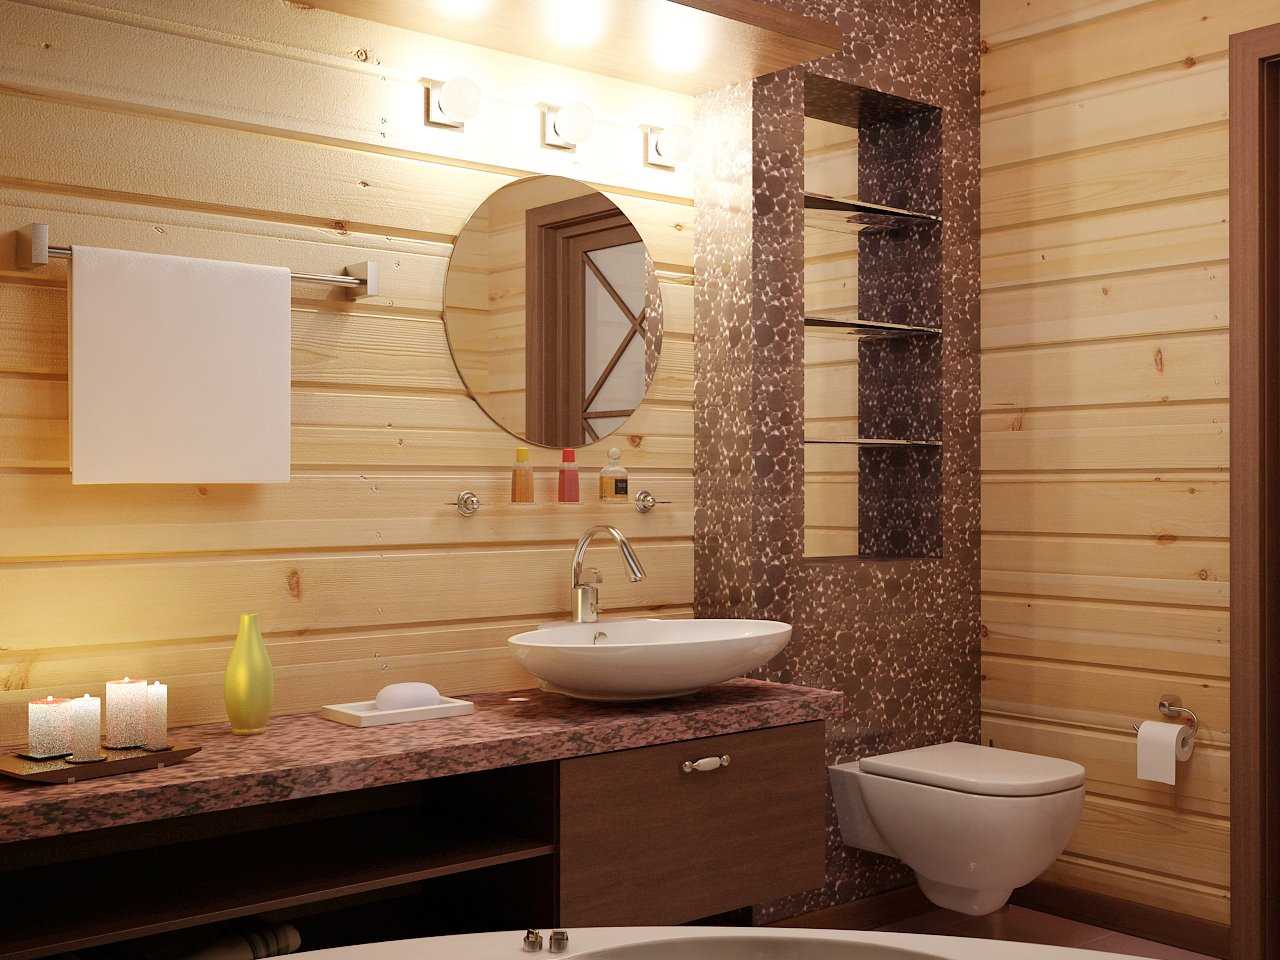 otdelka tualeta 001 5 - Дизайн туалета: варианты отделки